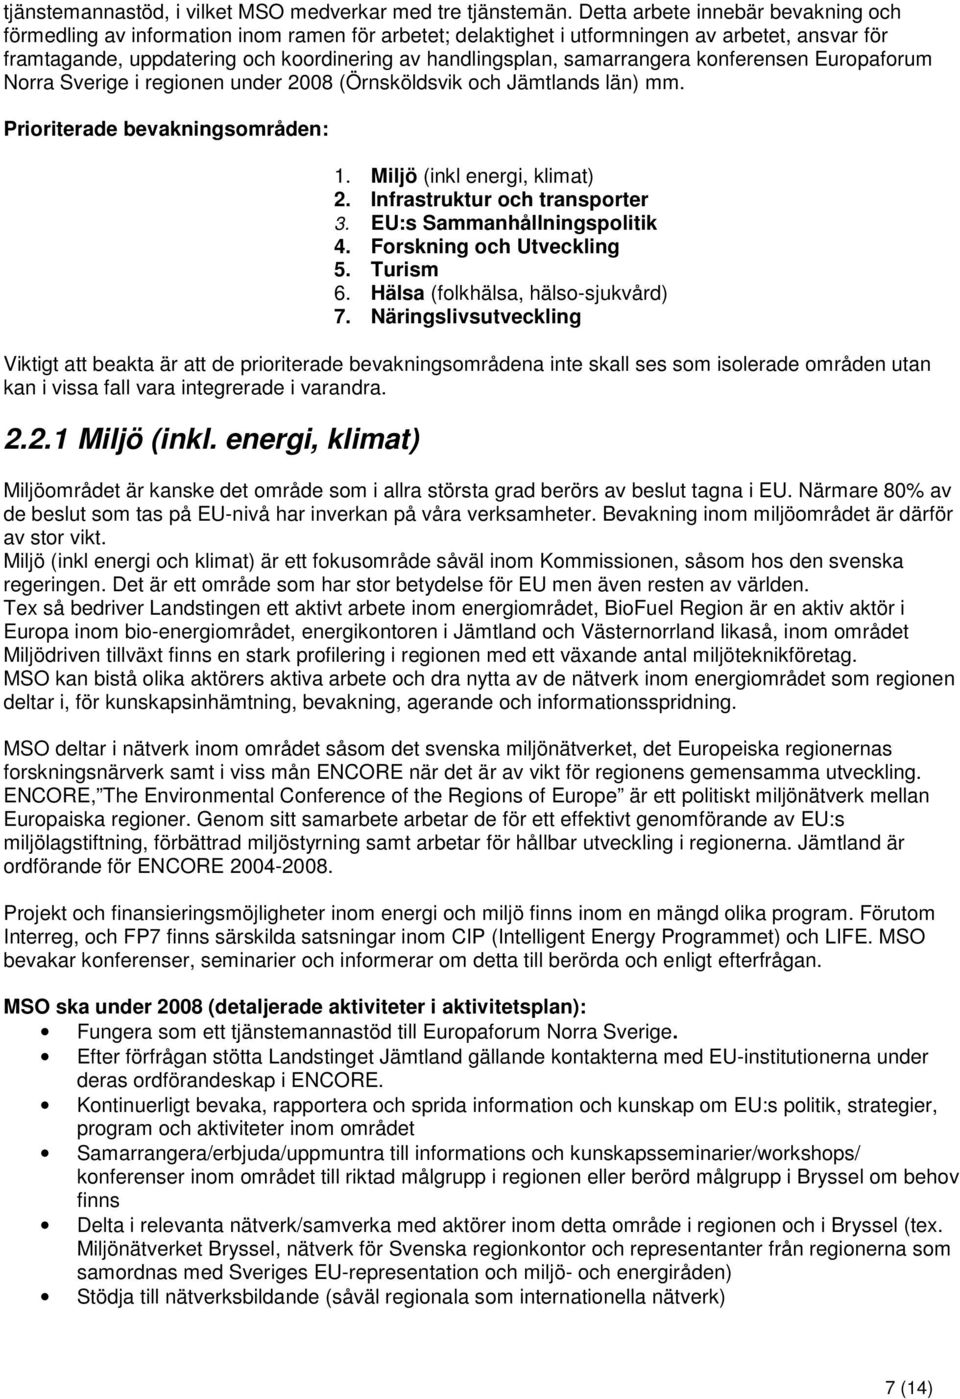 samarrangera konferensen Europaforum Norra Sverige i regionen under 2008 (Örnsköldsvik och Jämtlands län) mm. Prioriterade bevakningsområden: 1. Miljö (inkl energi, klimat) 2.